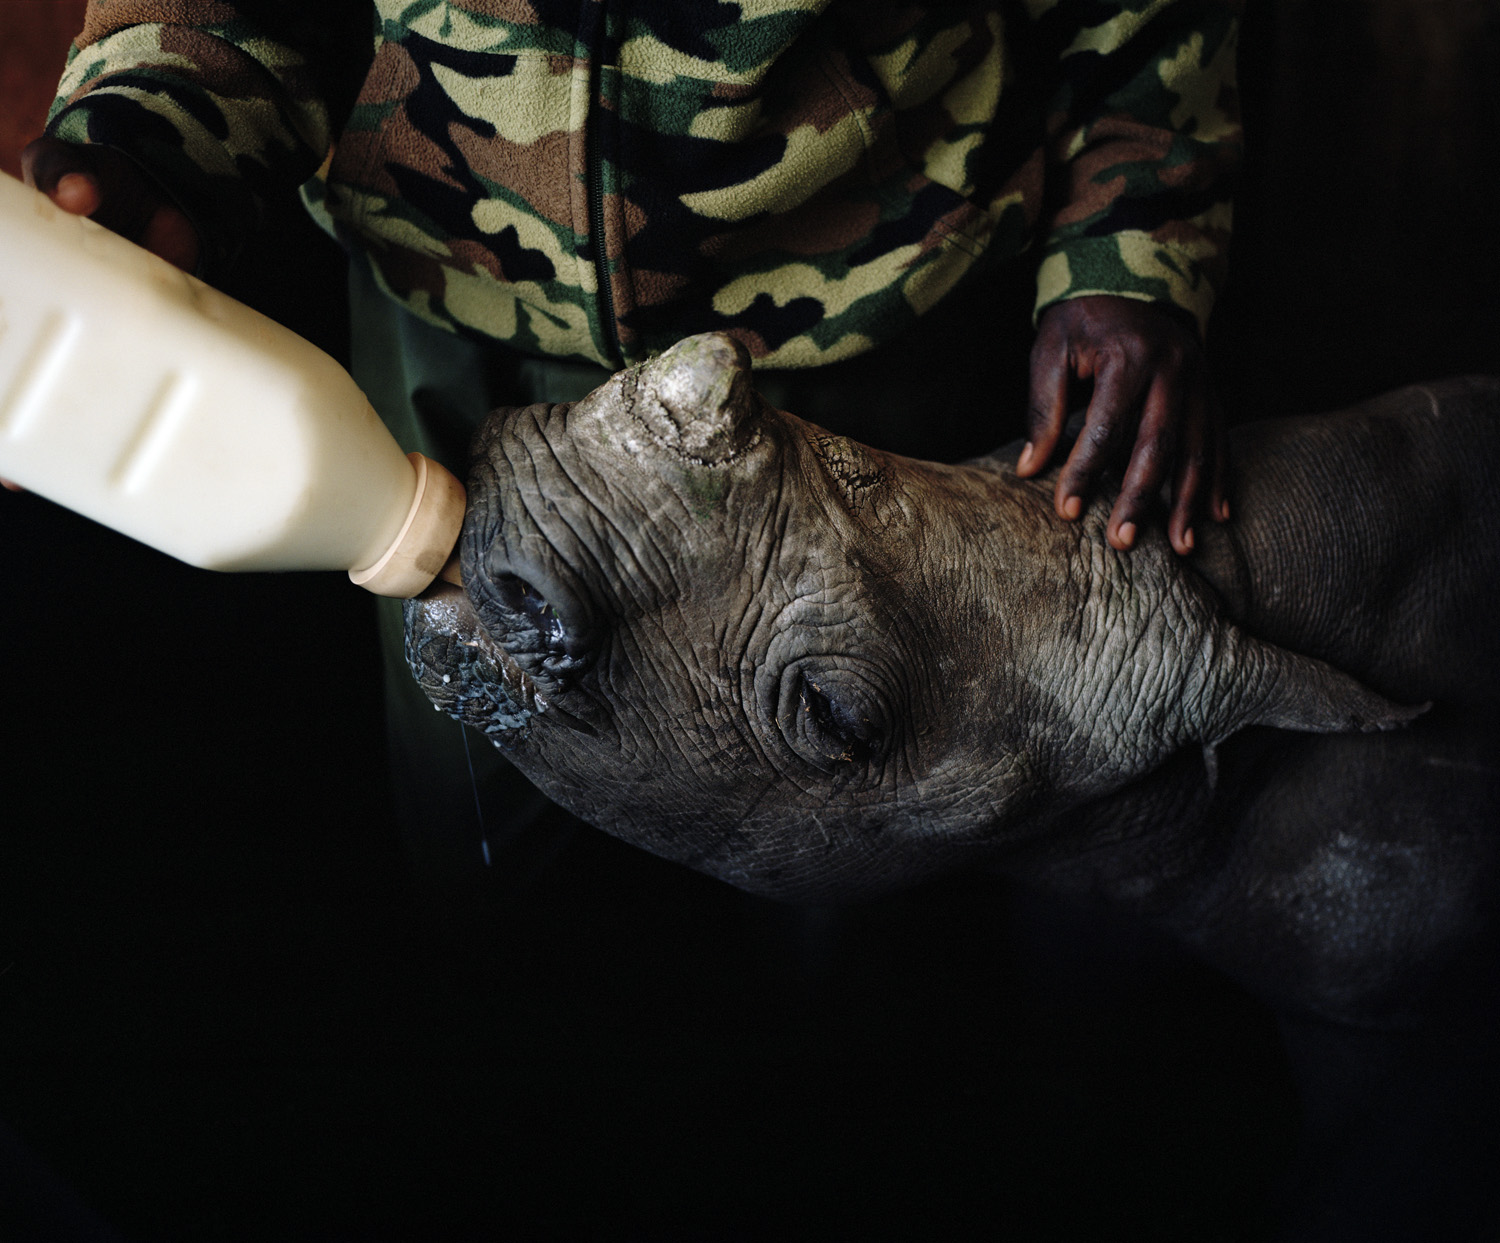 DC 7509.45 001 orphan black rhino # II, lewa conservancy, kenya-